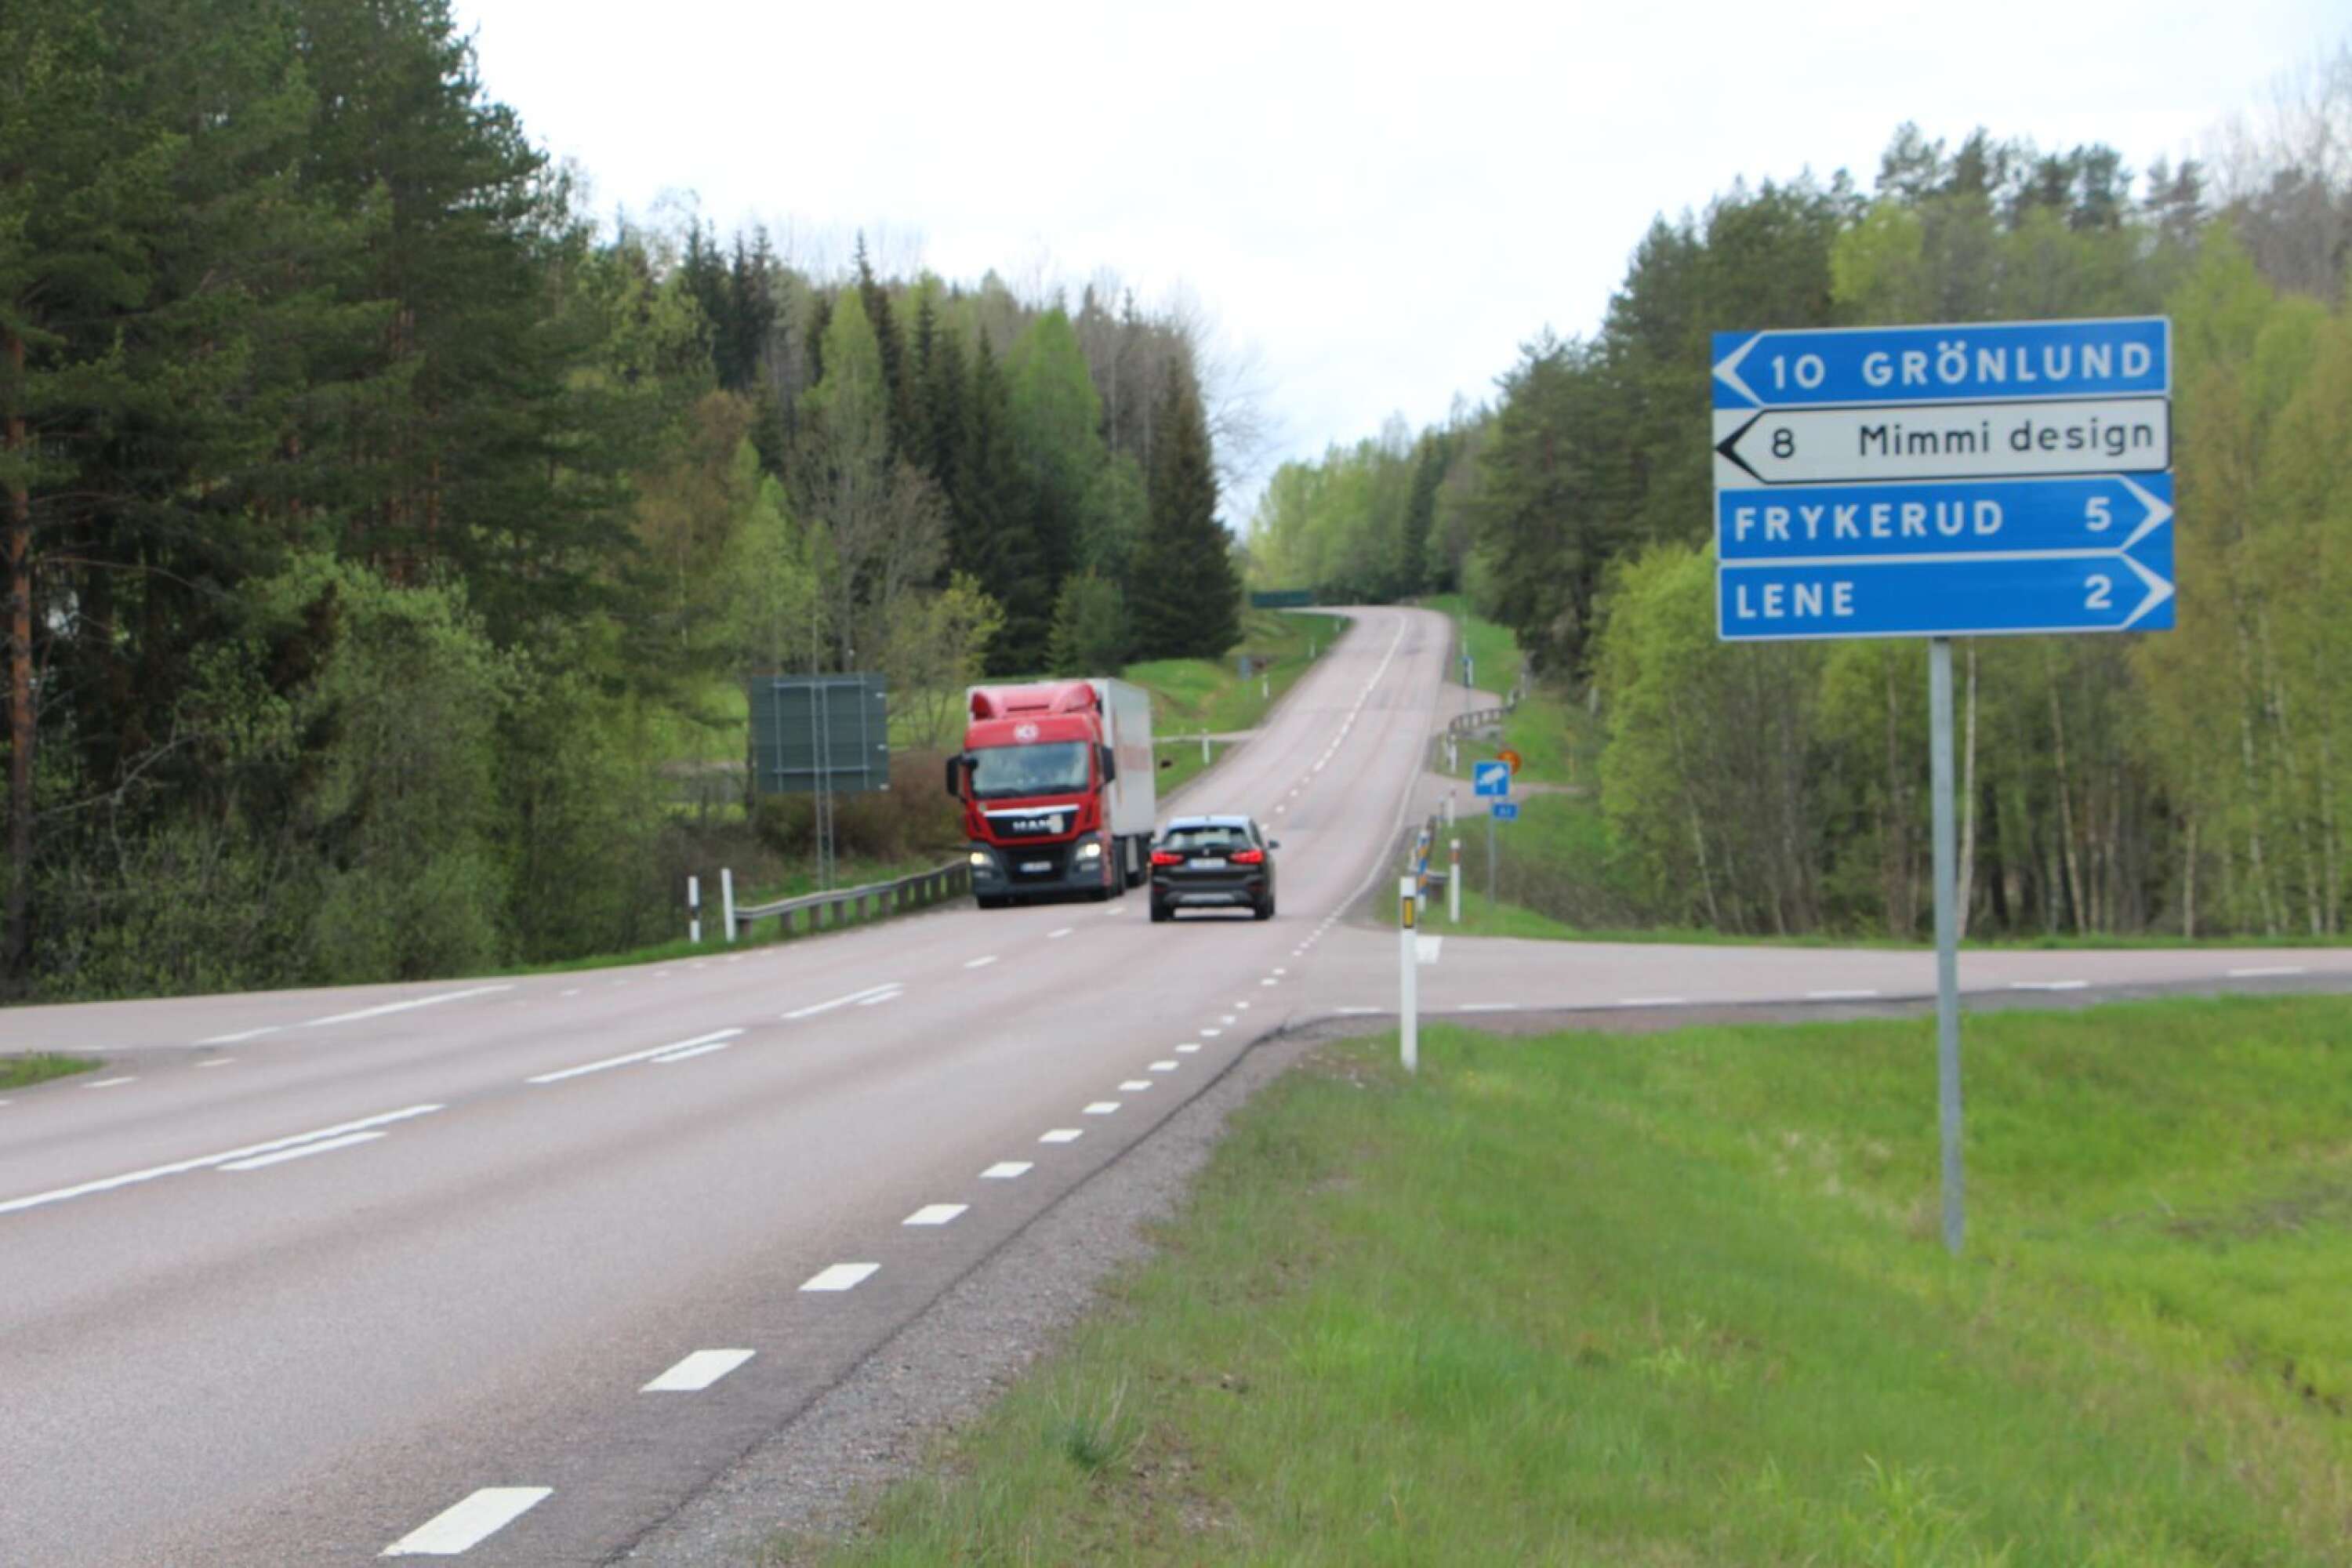 Det så kallade Lene-korset där vägarna leder till Lene och Frykerud respektive Grönlund är olycksdrabbat. Nu ska det byggas om.